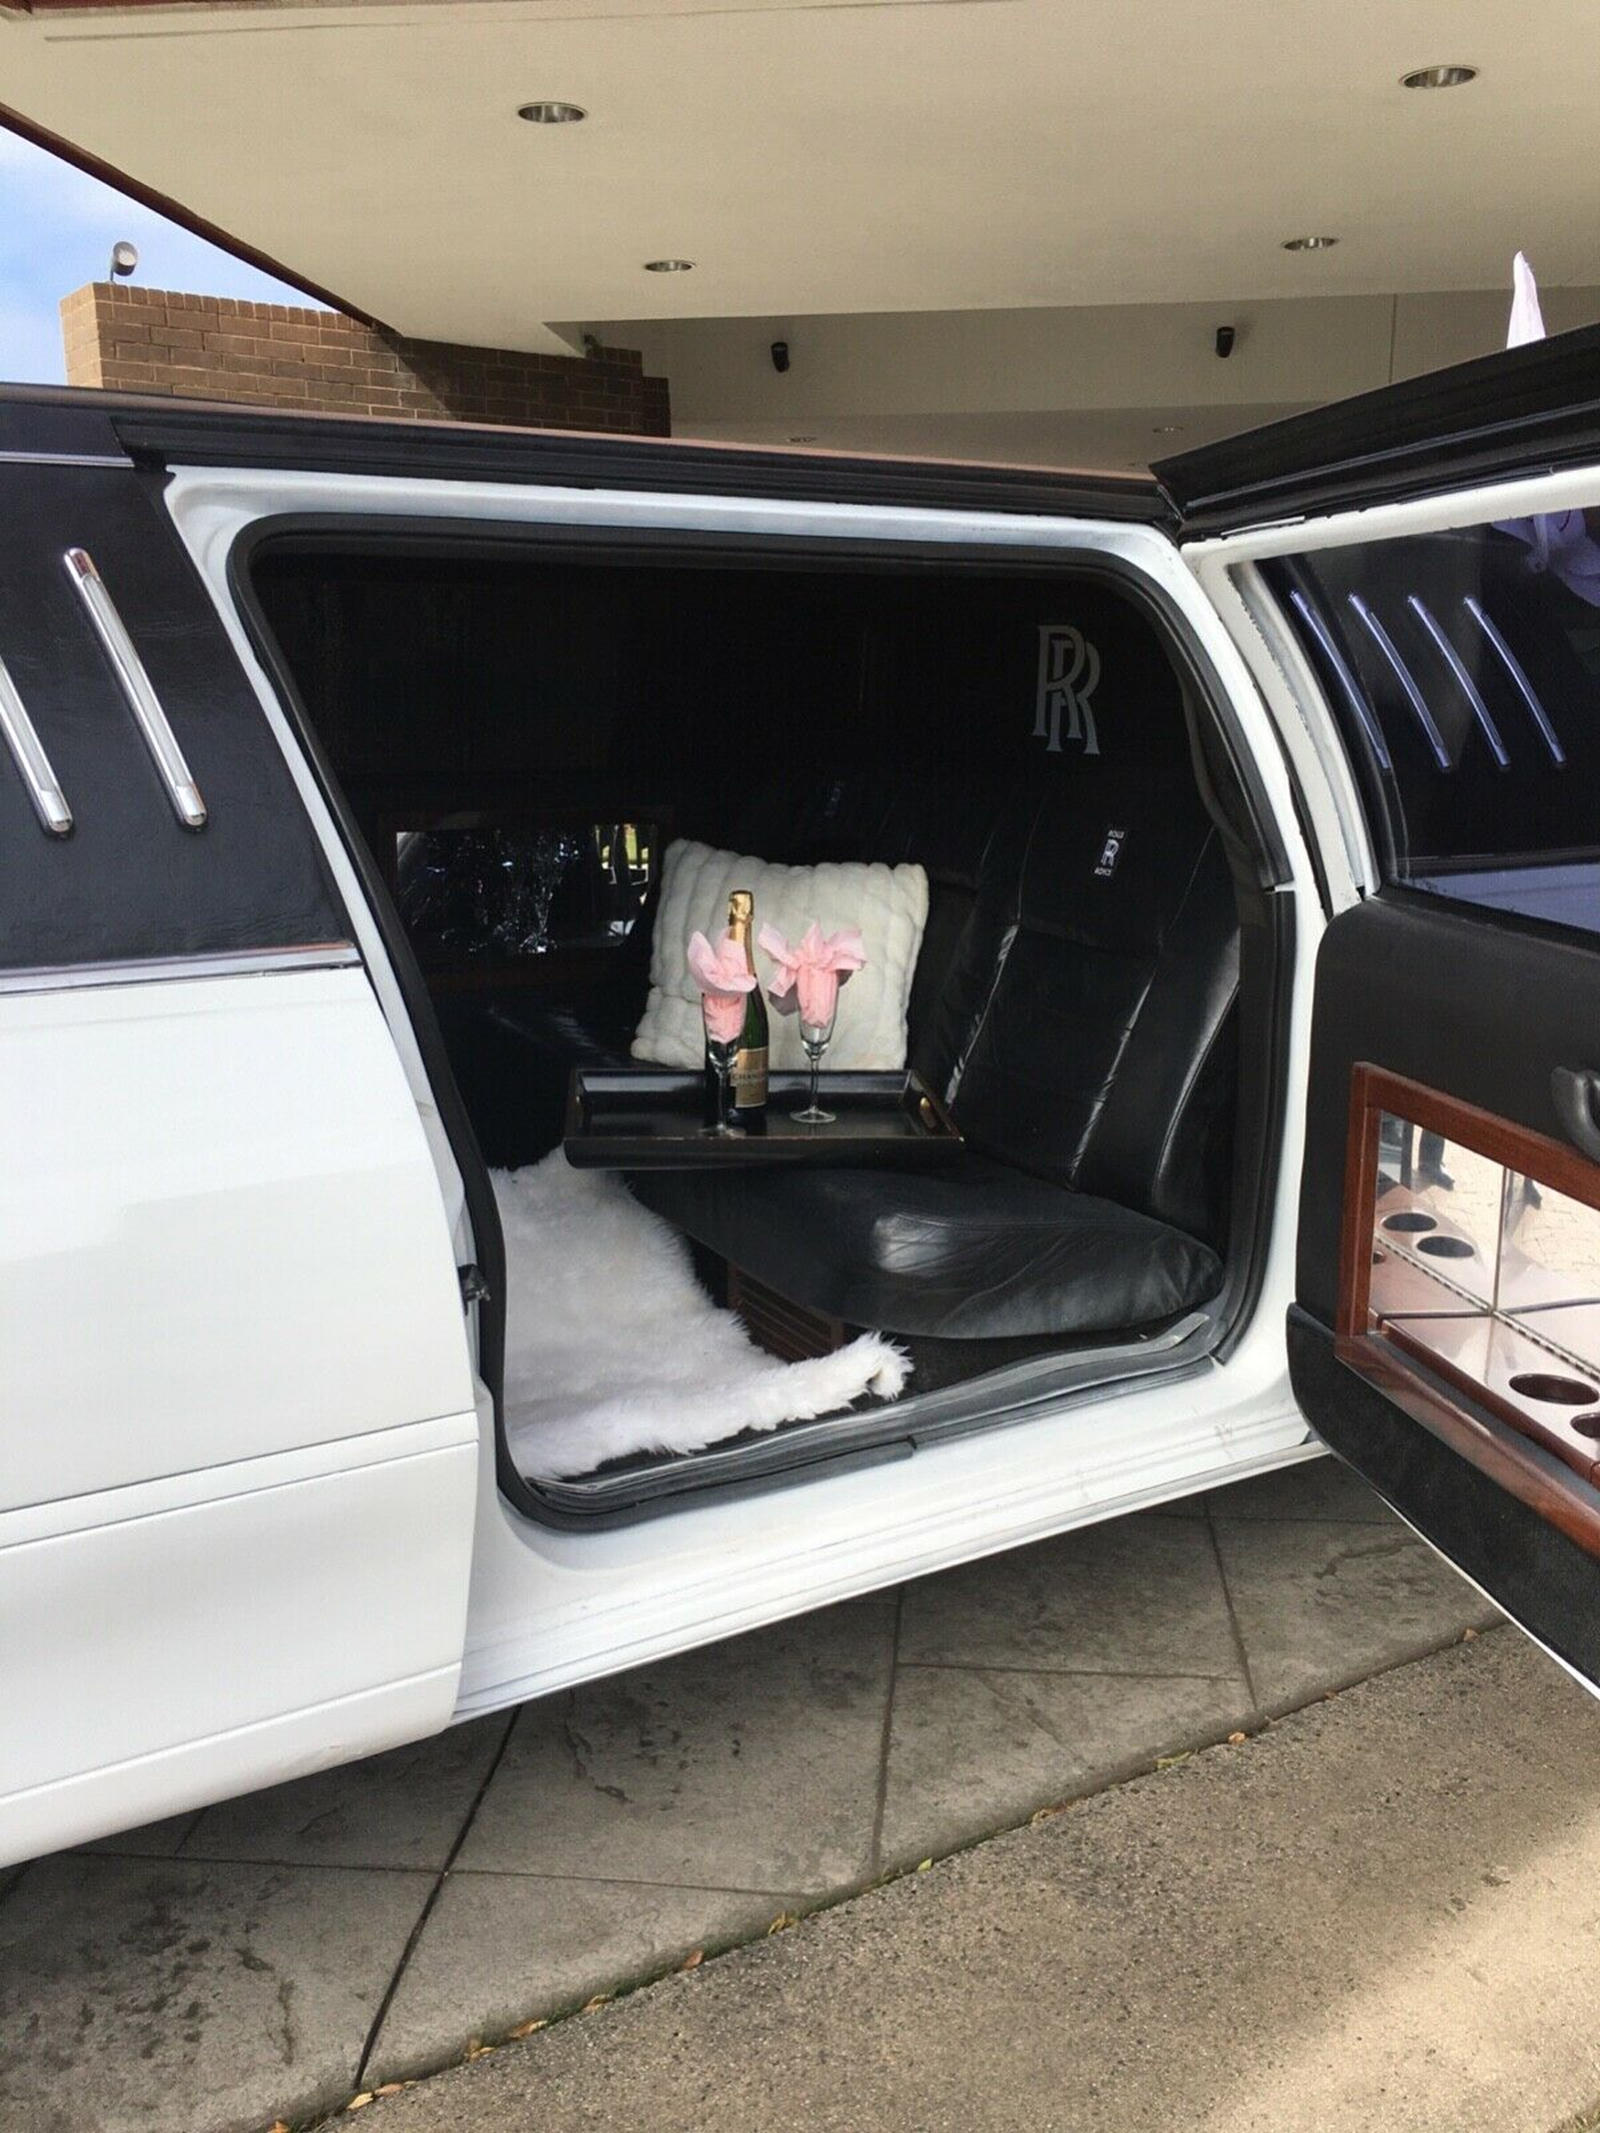 Nhìn rất Rolls-Royce Ghost mà lại là Lincoln nhưng màn độ limousine còn thuyết phục hơn - Ảnh 8.